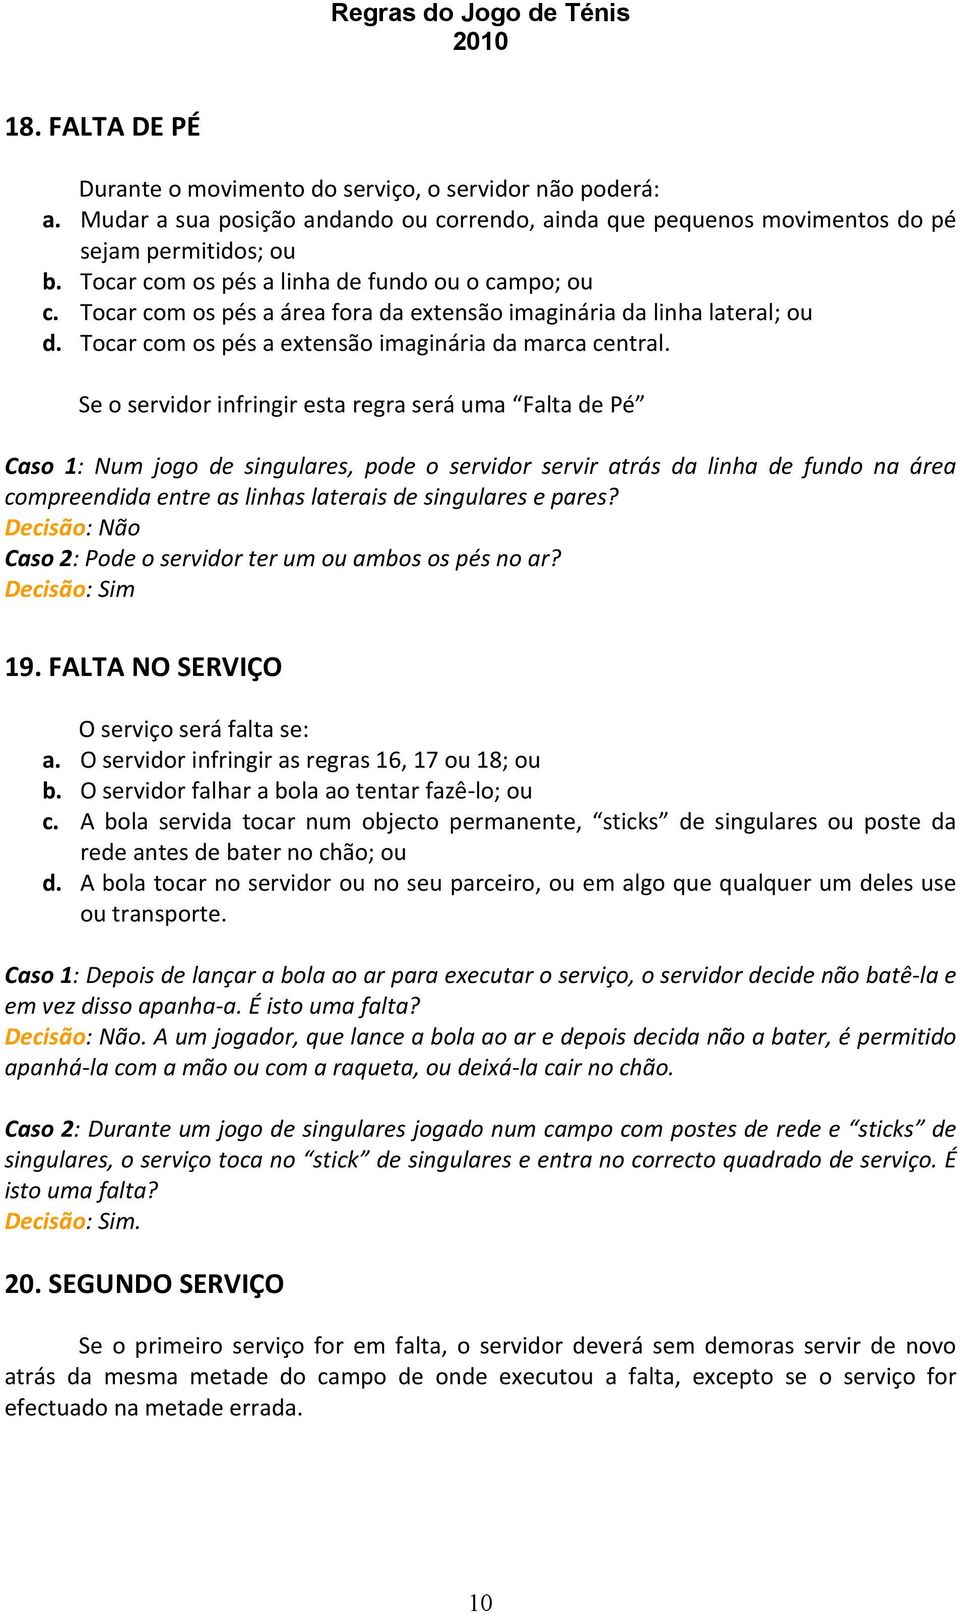 REGRAS DO JOGO DE TÉNIS - PDF Free Download